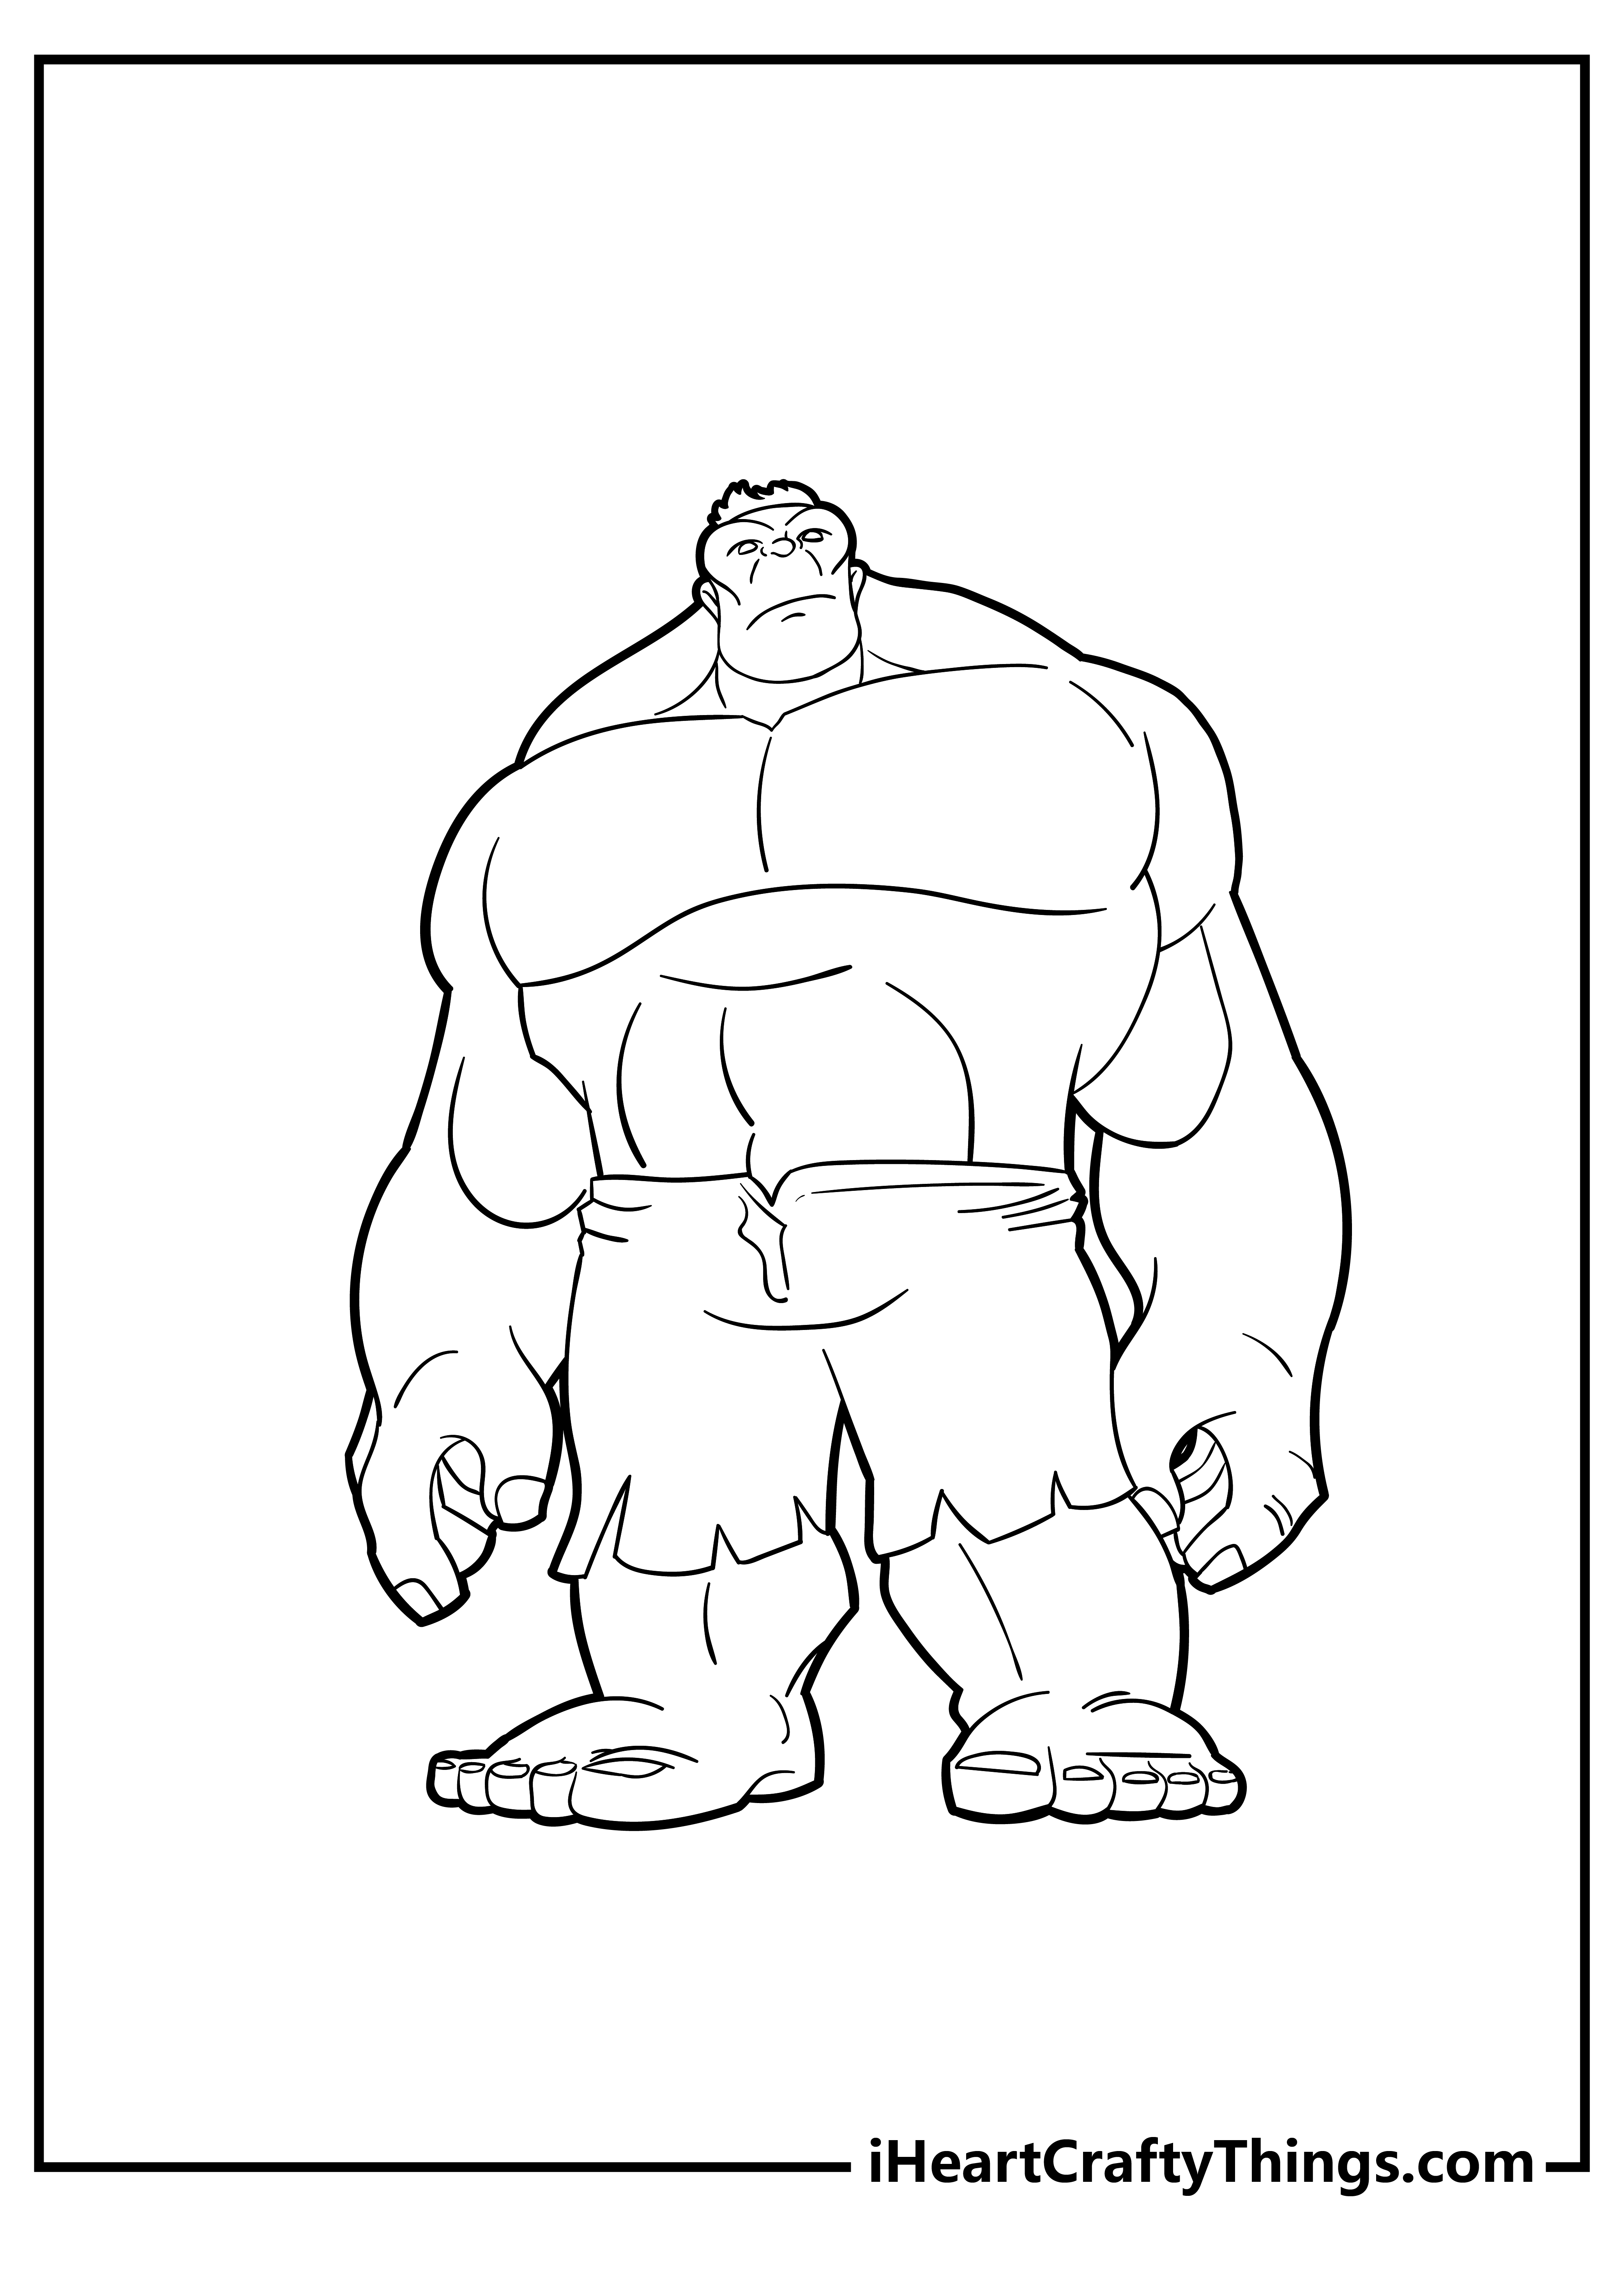 Hulk Coloring Pages free pdf download